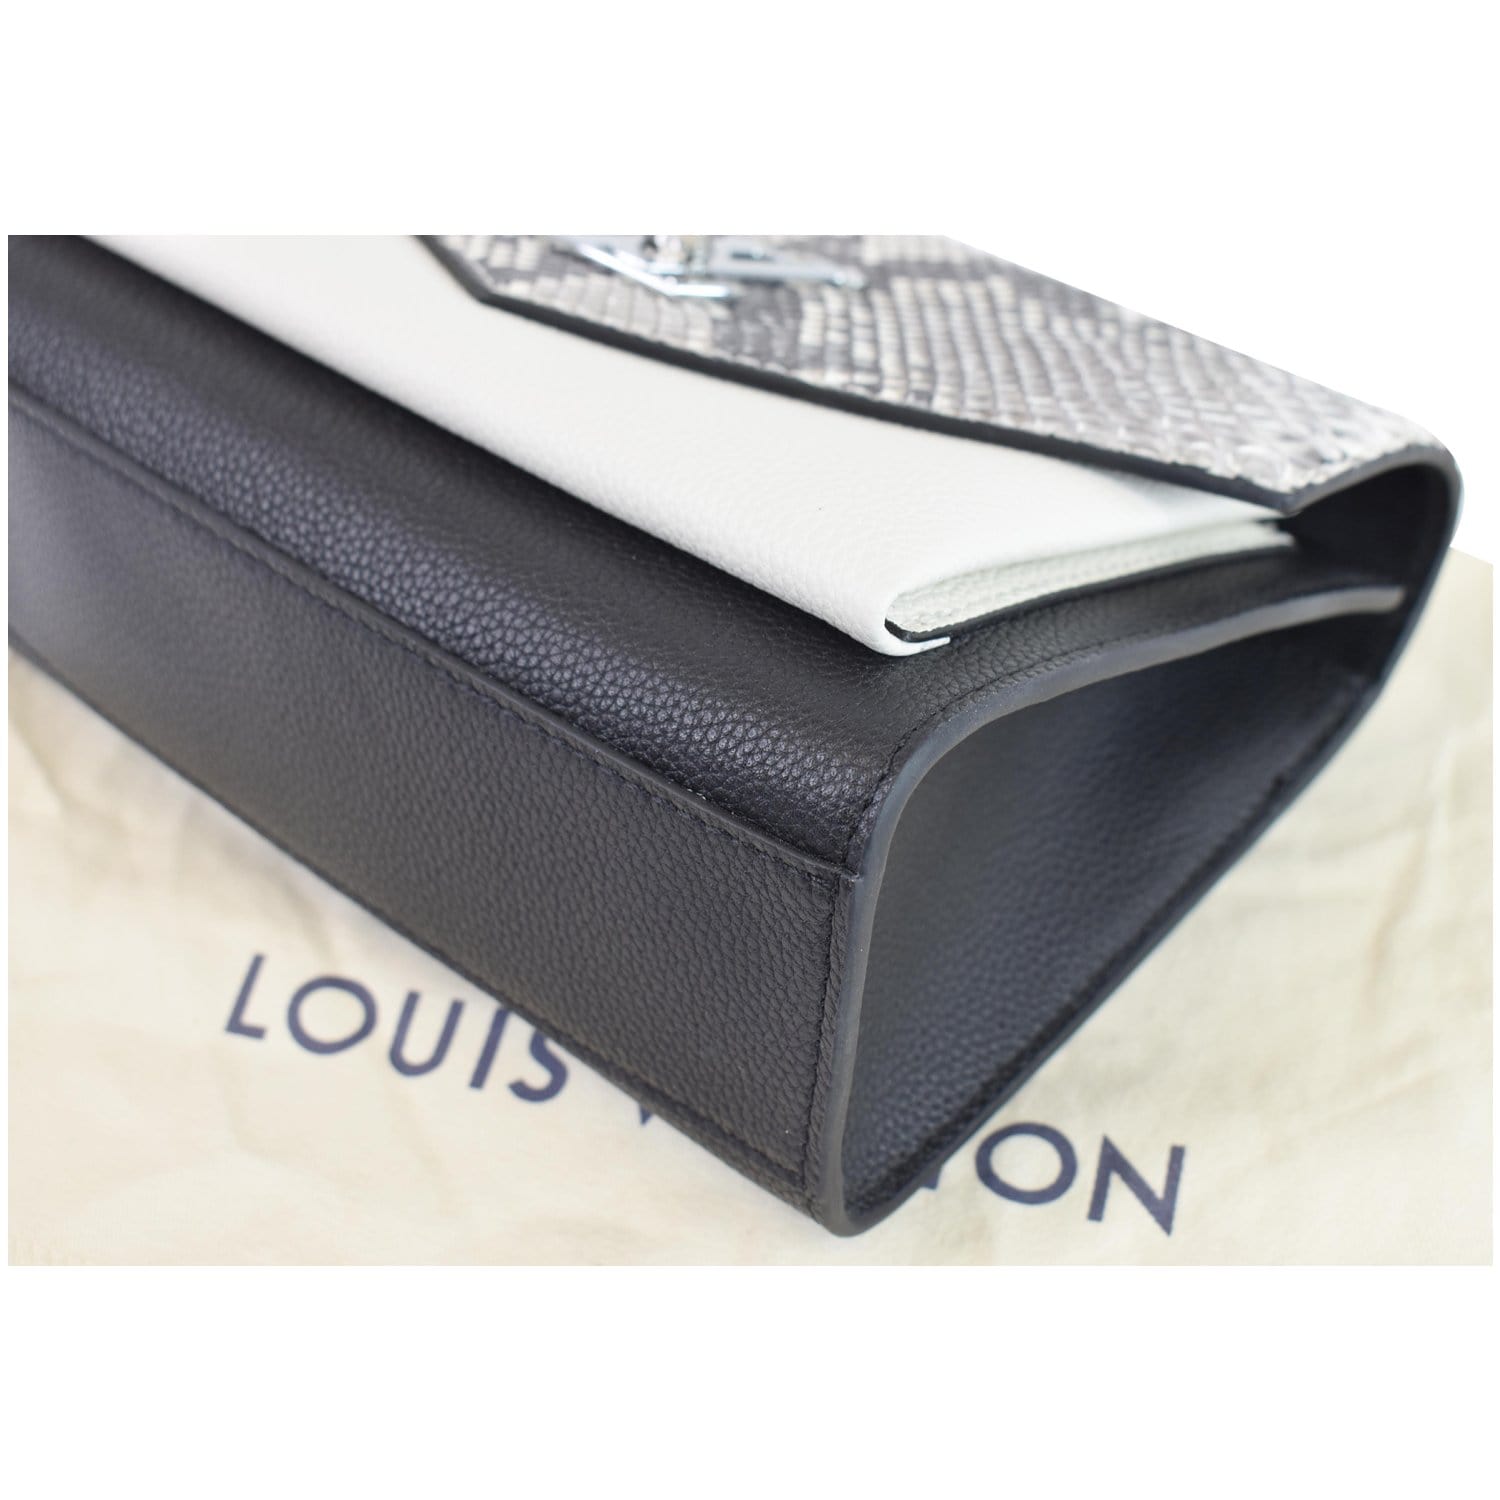 Coussin python clutch bag Louis Vuitton Multicolour in Python